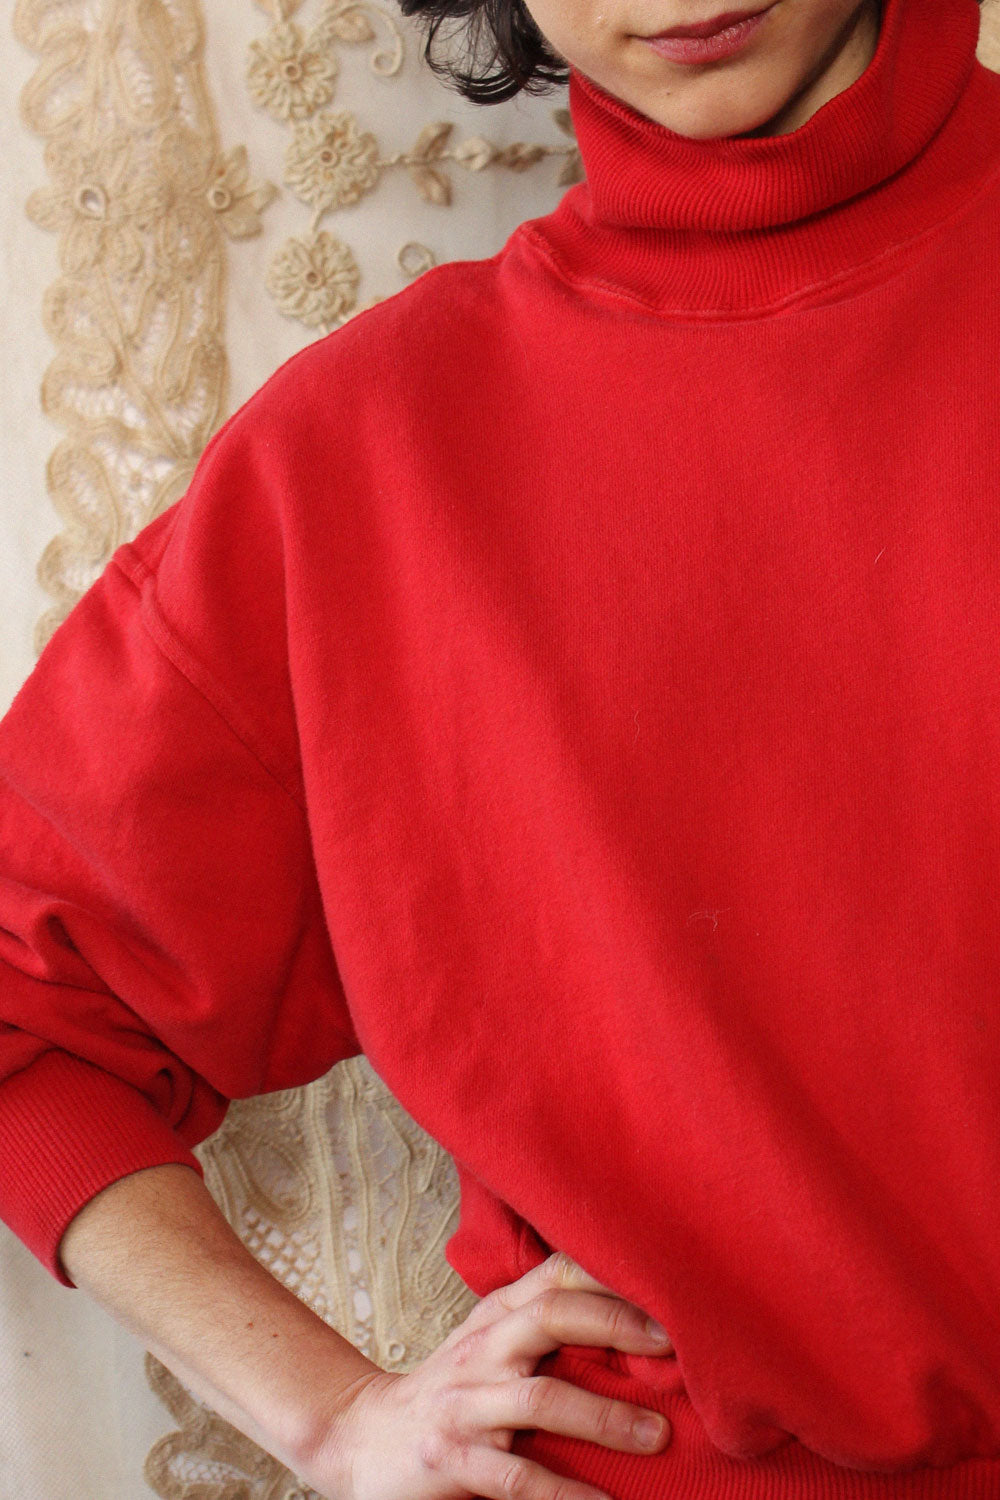 Red Sweatshirt Mini Dress XS/S